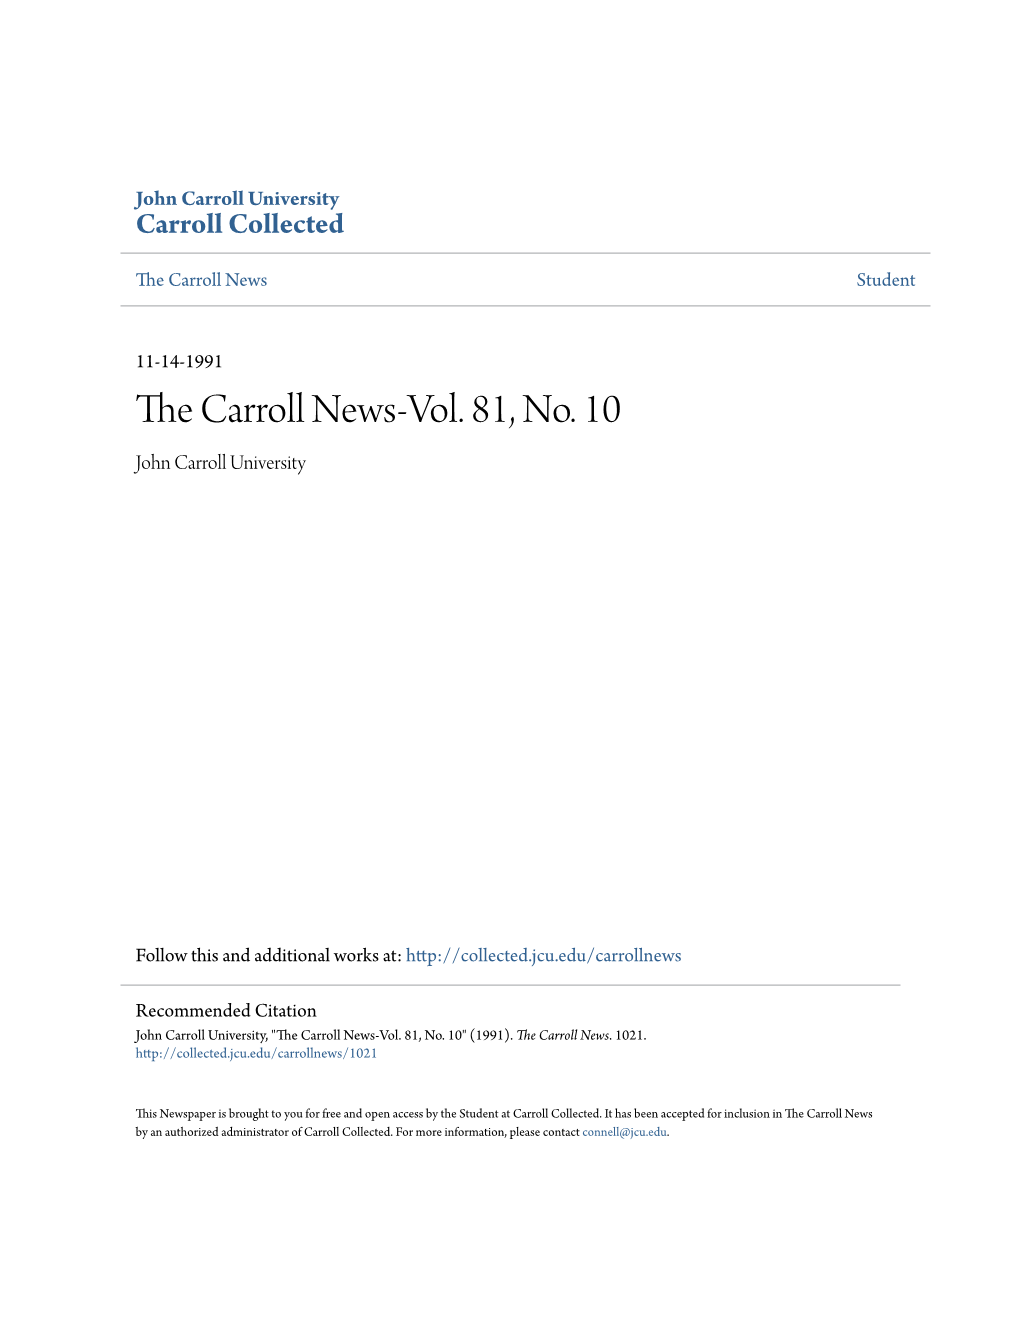 The Carroll News-Vol. 81, No. 10